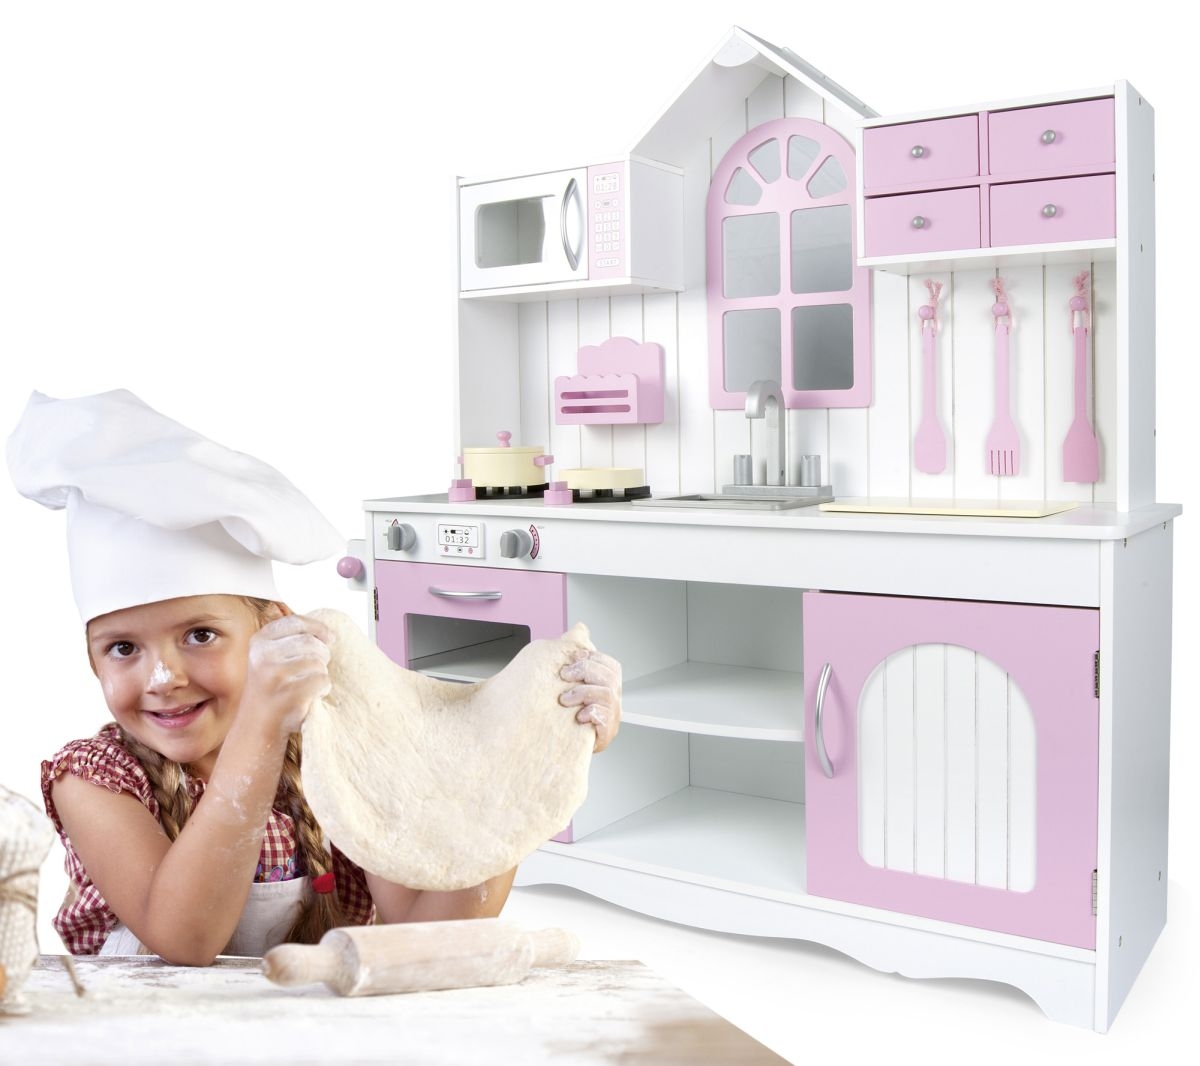 Кухня деревянная – Прованс, розовый, с аксессуарами  